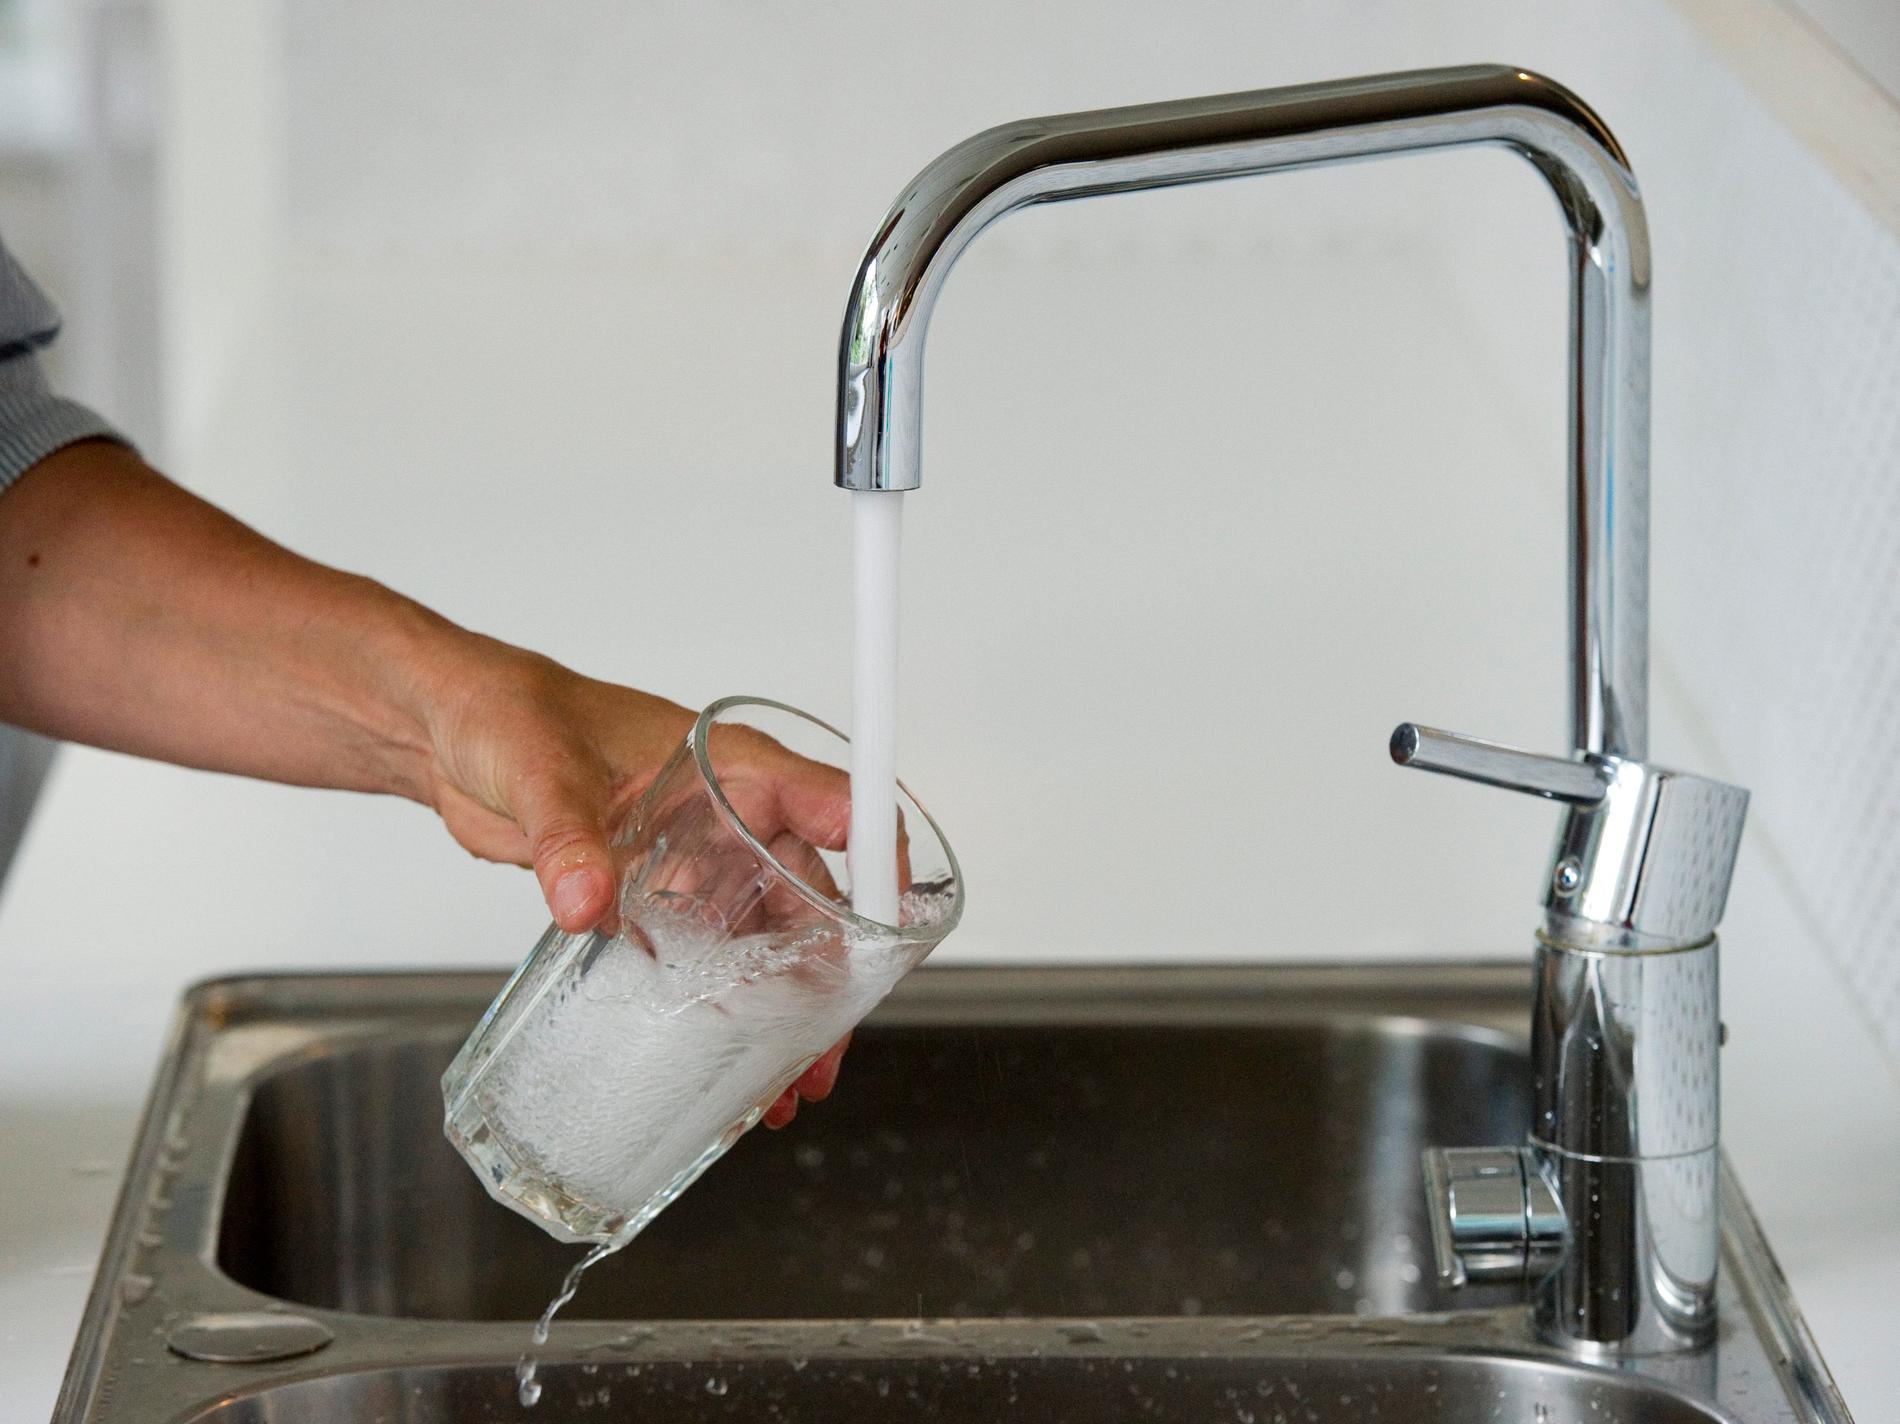 Invånare i Östersunds och Krokoms kommuner uppmanas att koka sitt dricksvatten, eftersom det kan vara förorenat av bakterier. Arkivbild.